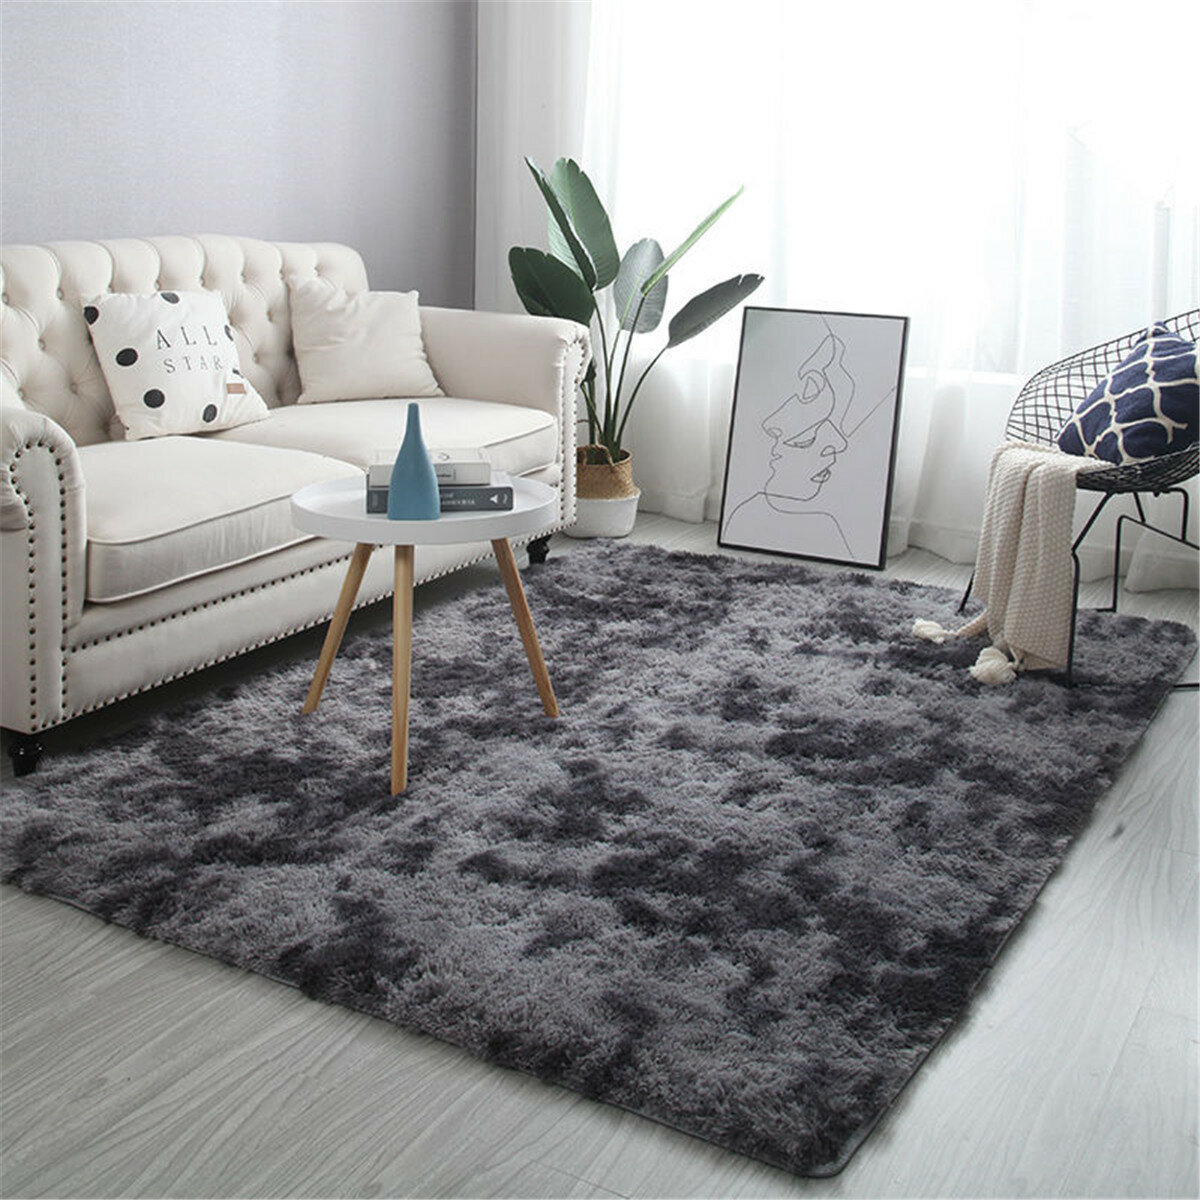 Soft Thick Carpet Plush Rug Fluffy Floor Carpets Soft Velvet Mat for Living Room 